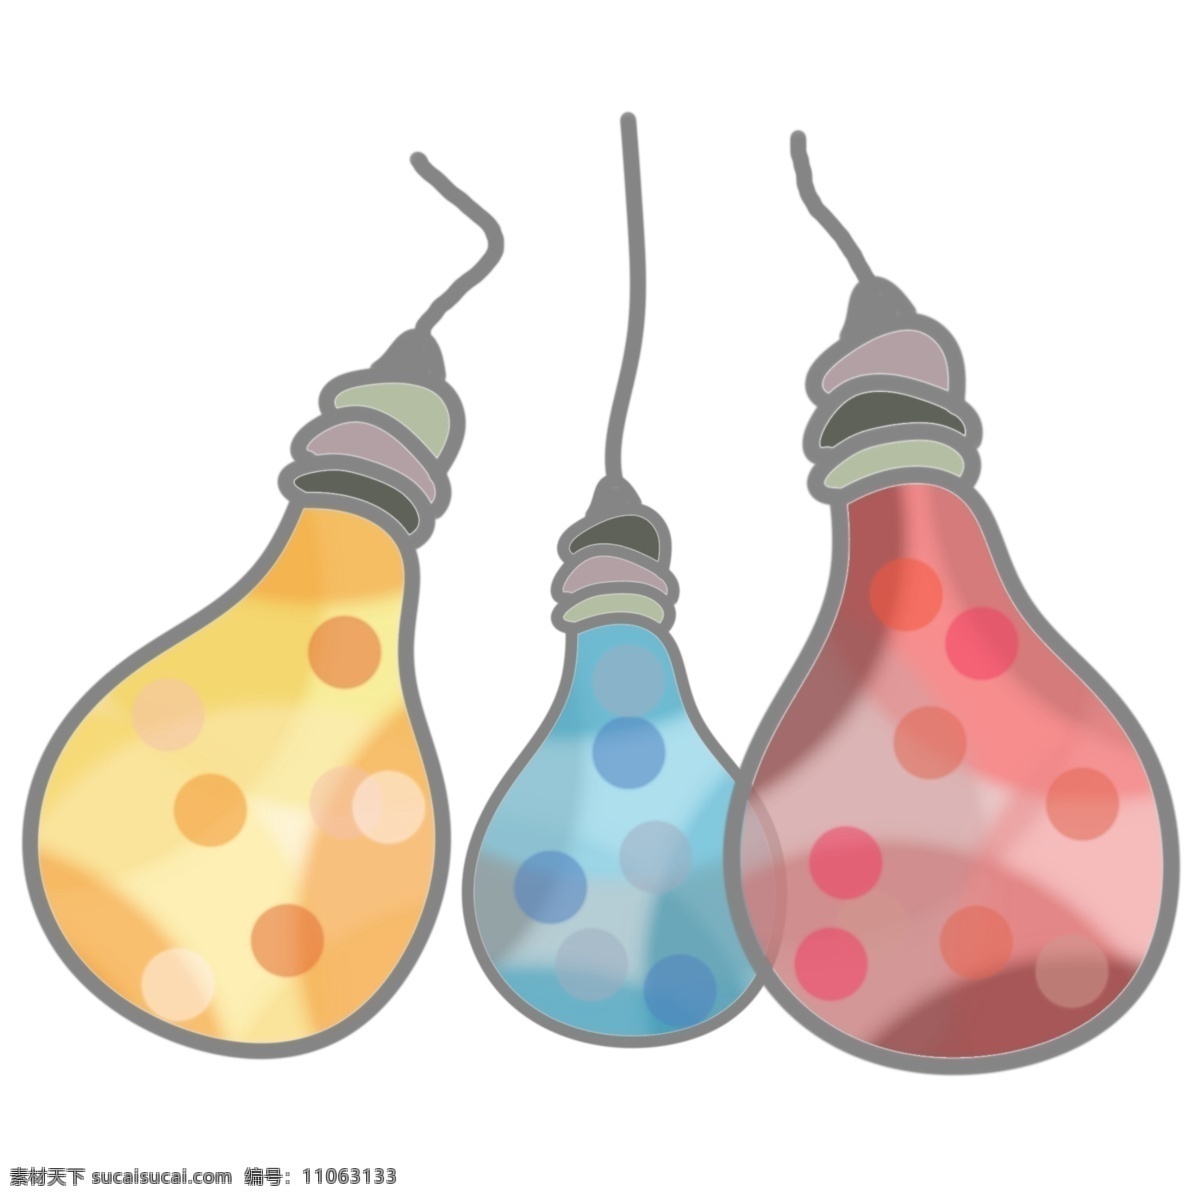 彩色 卡通 灯泡 插画 唯美的灯泡 三个灯泡 灯具 卡通灯泡插画 灯具插画 创意灯具插画 彩色灯泡插画